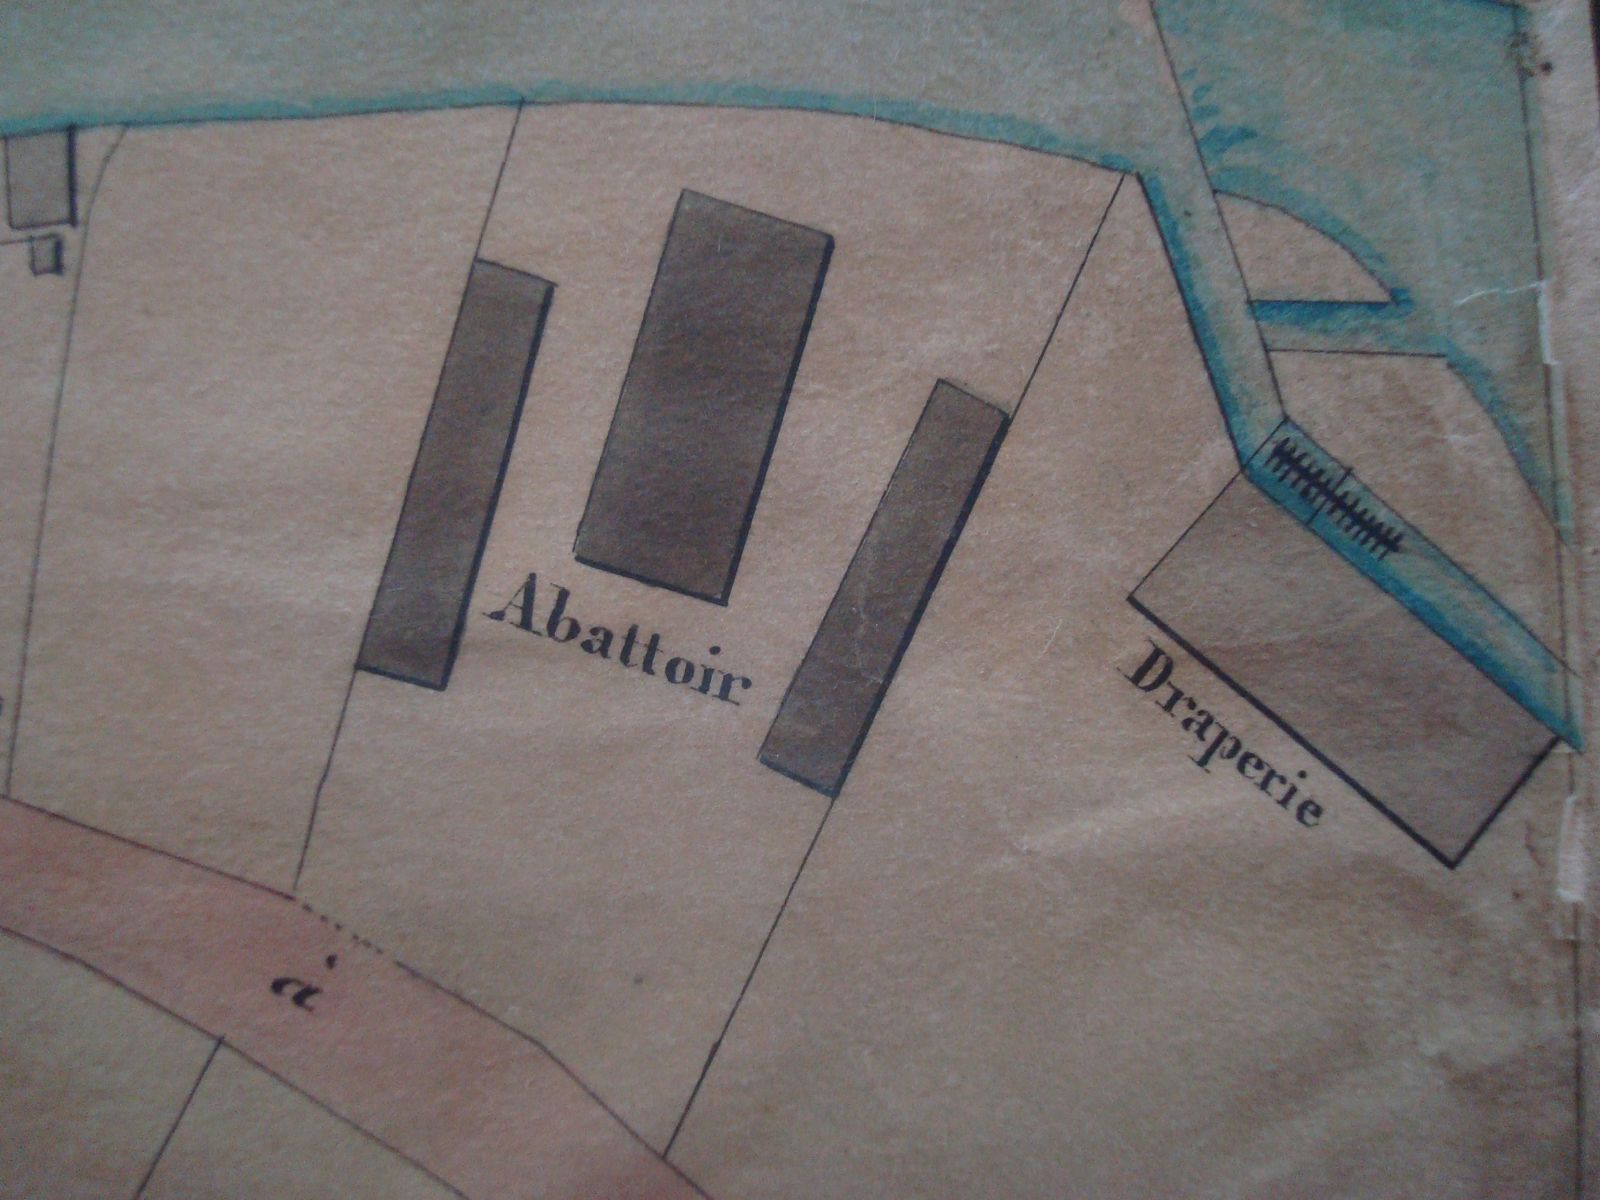 Extrait du plan de la ville d'Aubusson et de ses faubourgs dans la seconde moitié du 19e siècle (Archives Nationales), avec la manufacture de draps Grellet et Chassaigne, à l'extrémité de la rue Vaveix, après les abattoirs